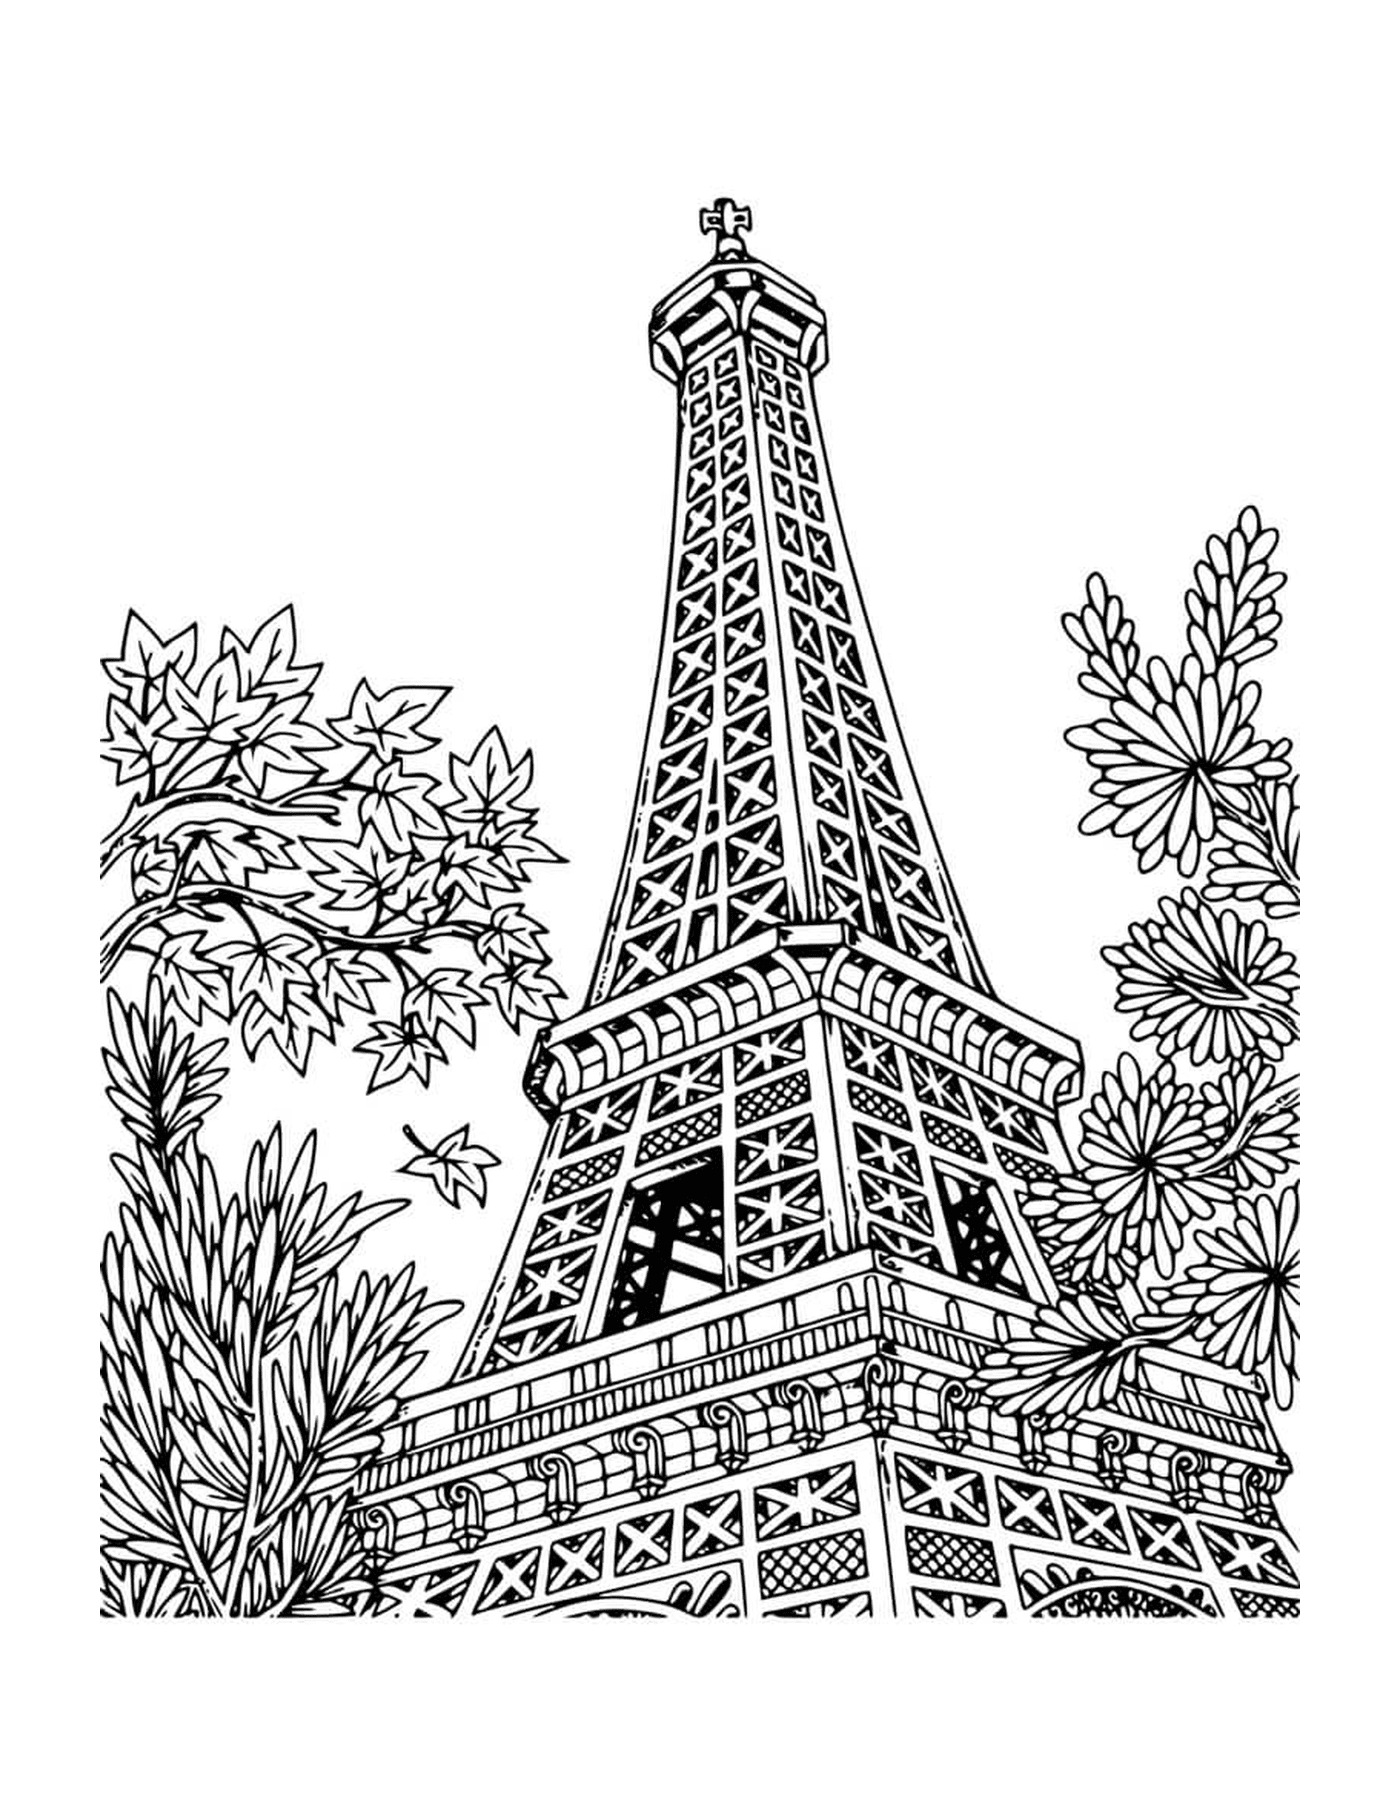  París en mandala, la Torre Eiffel imponente 